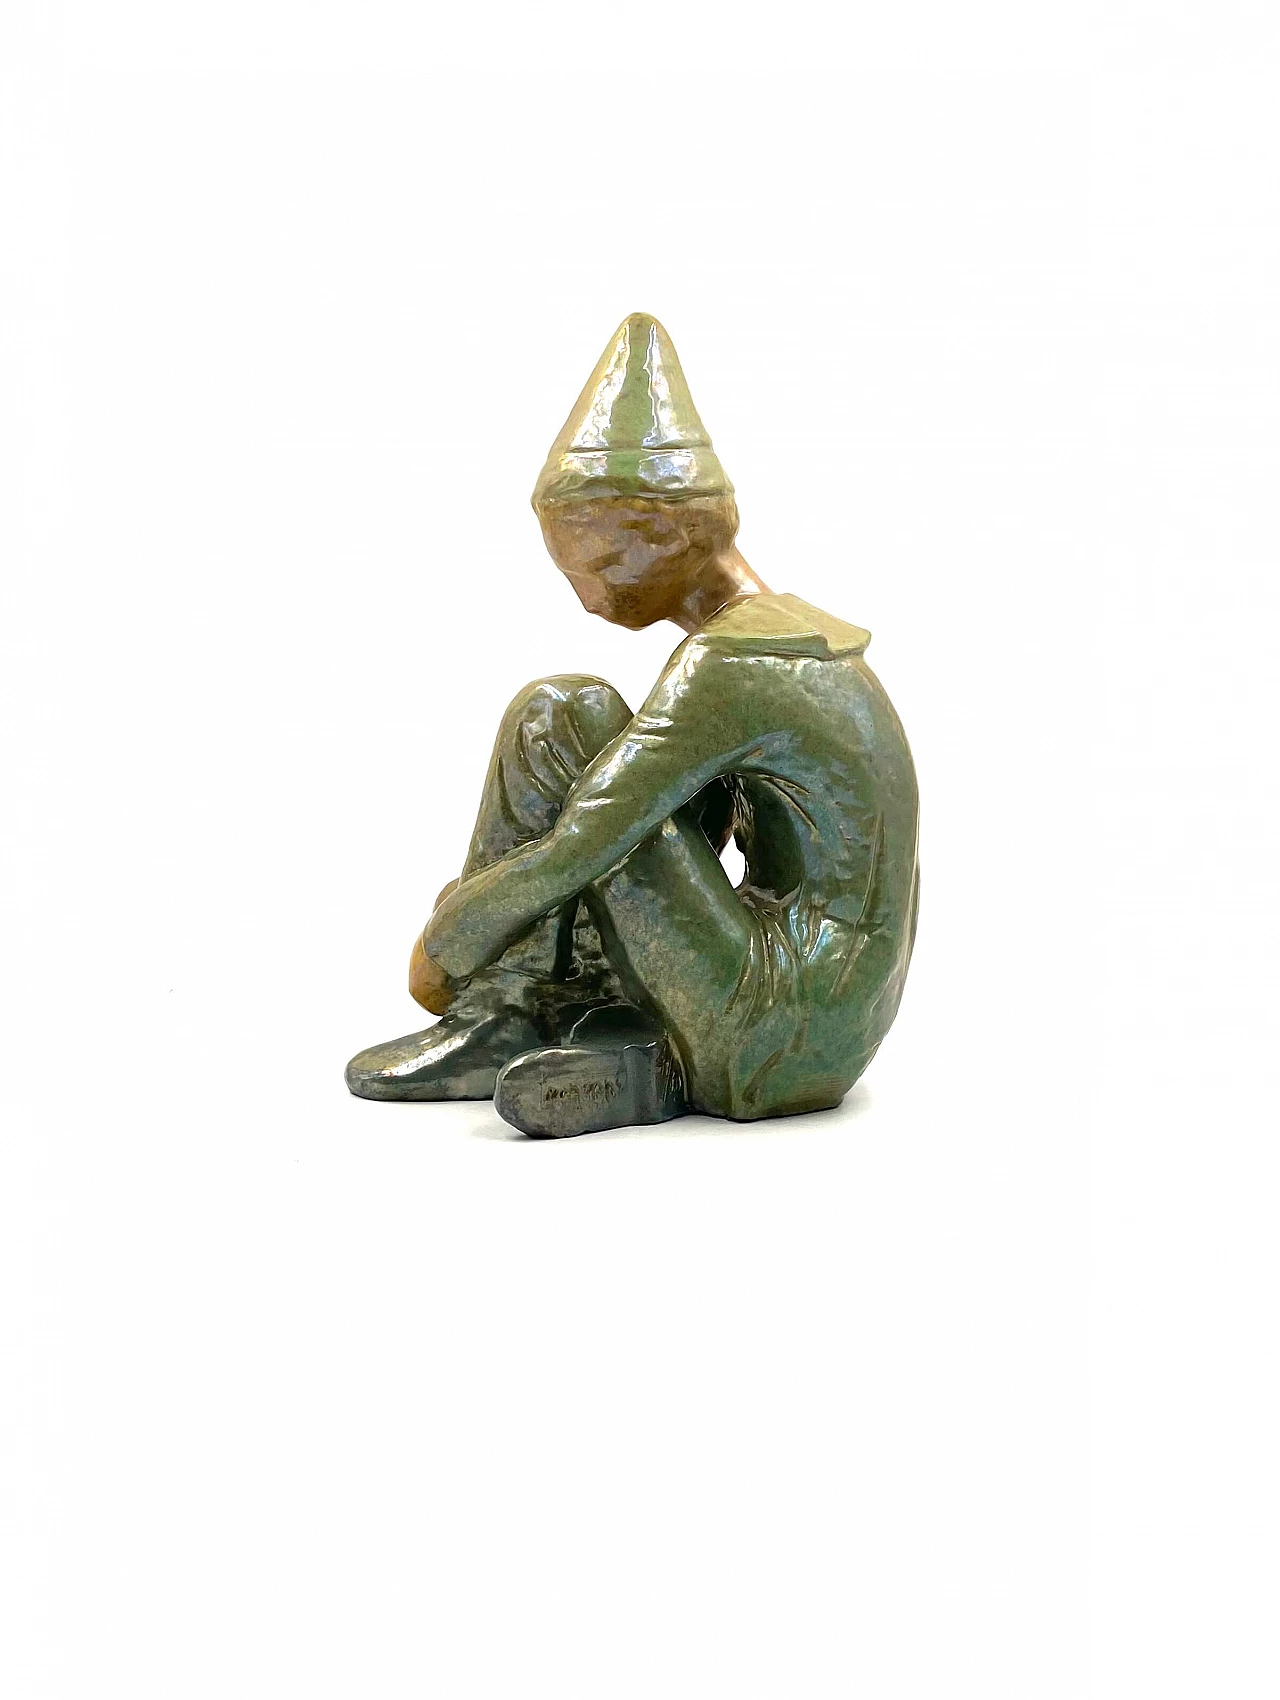 Giordano Tronconi, seated boy, glazed ceramic sculpture, 1950s 1